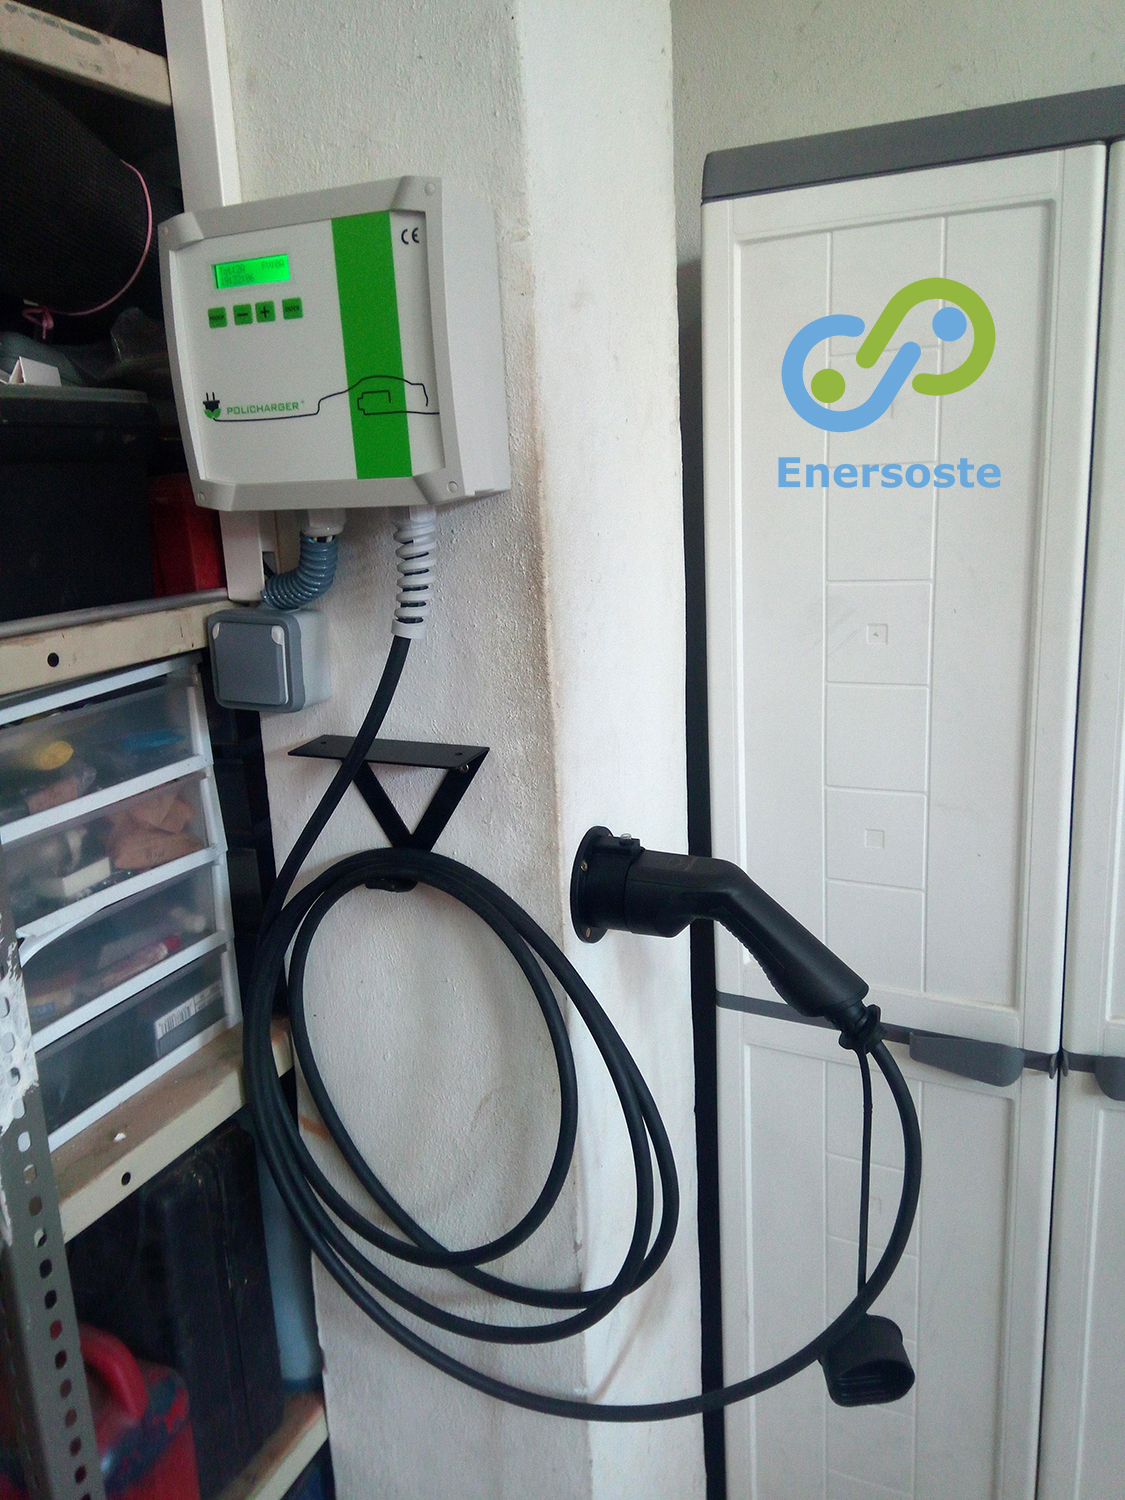 Ligero Inesperado cajón Instalación de un cargador de coche eléctrico en garaje privado ~ Enersoste  - Energías renovables